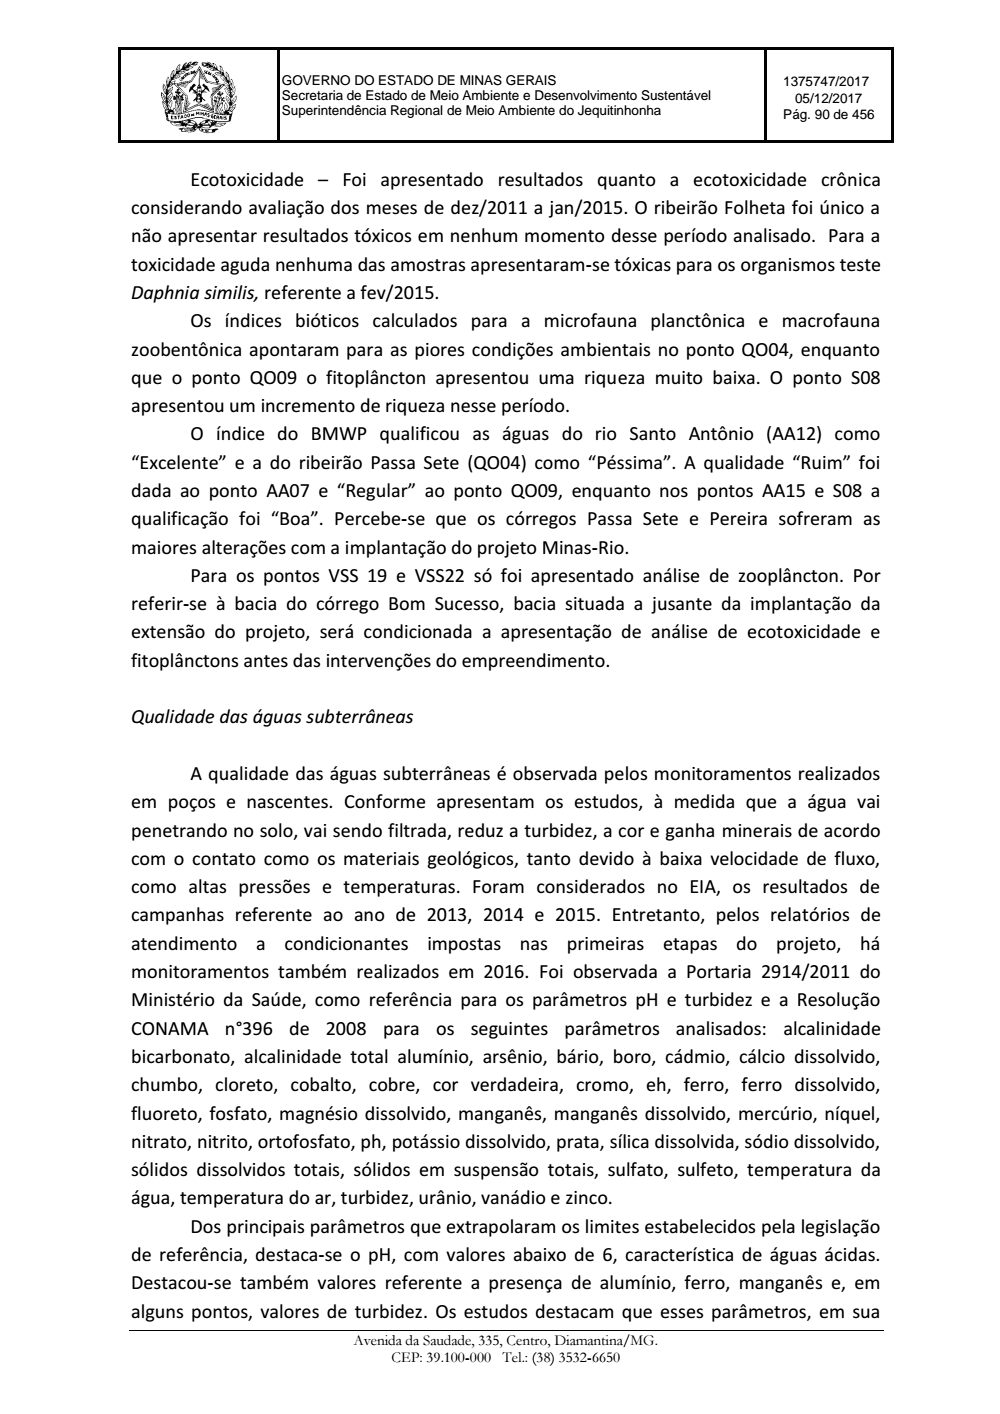 Page 90 from Parecer único da Secretaria de estado de Meio Ambiente e Desenvolvimento Sustentável (SEMAD)